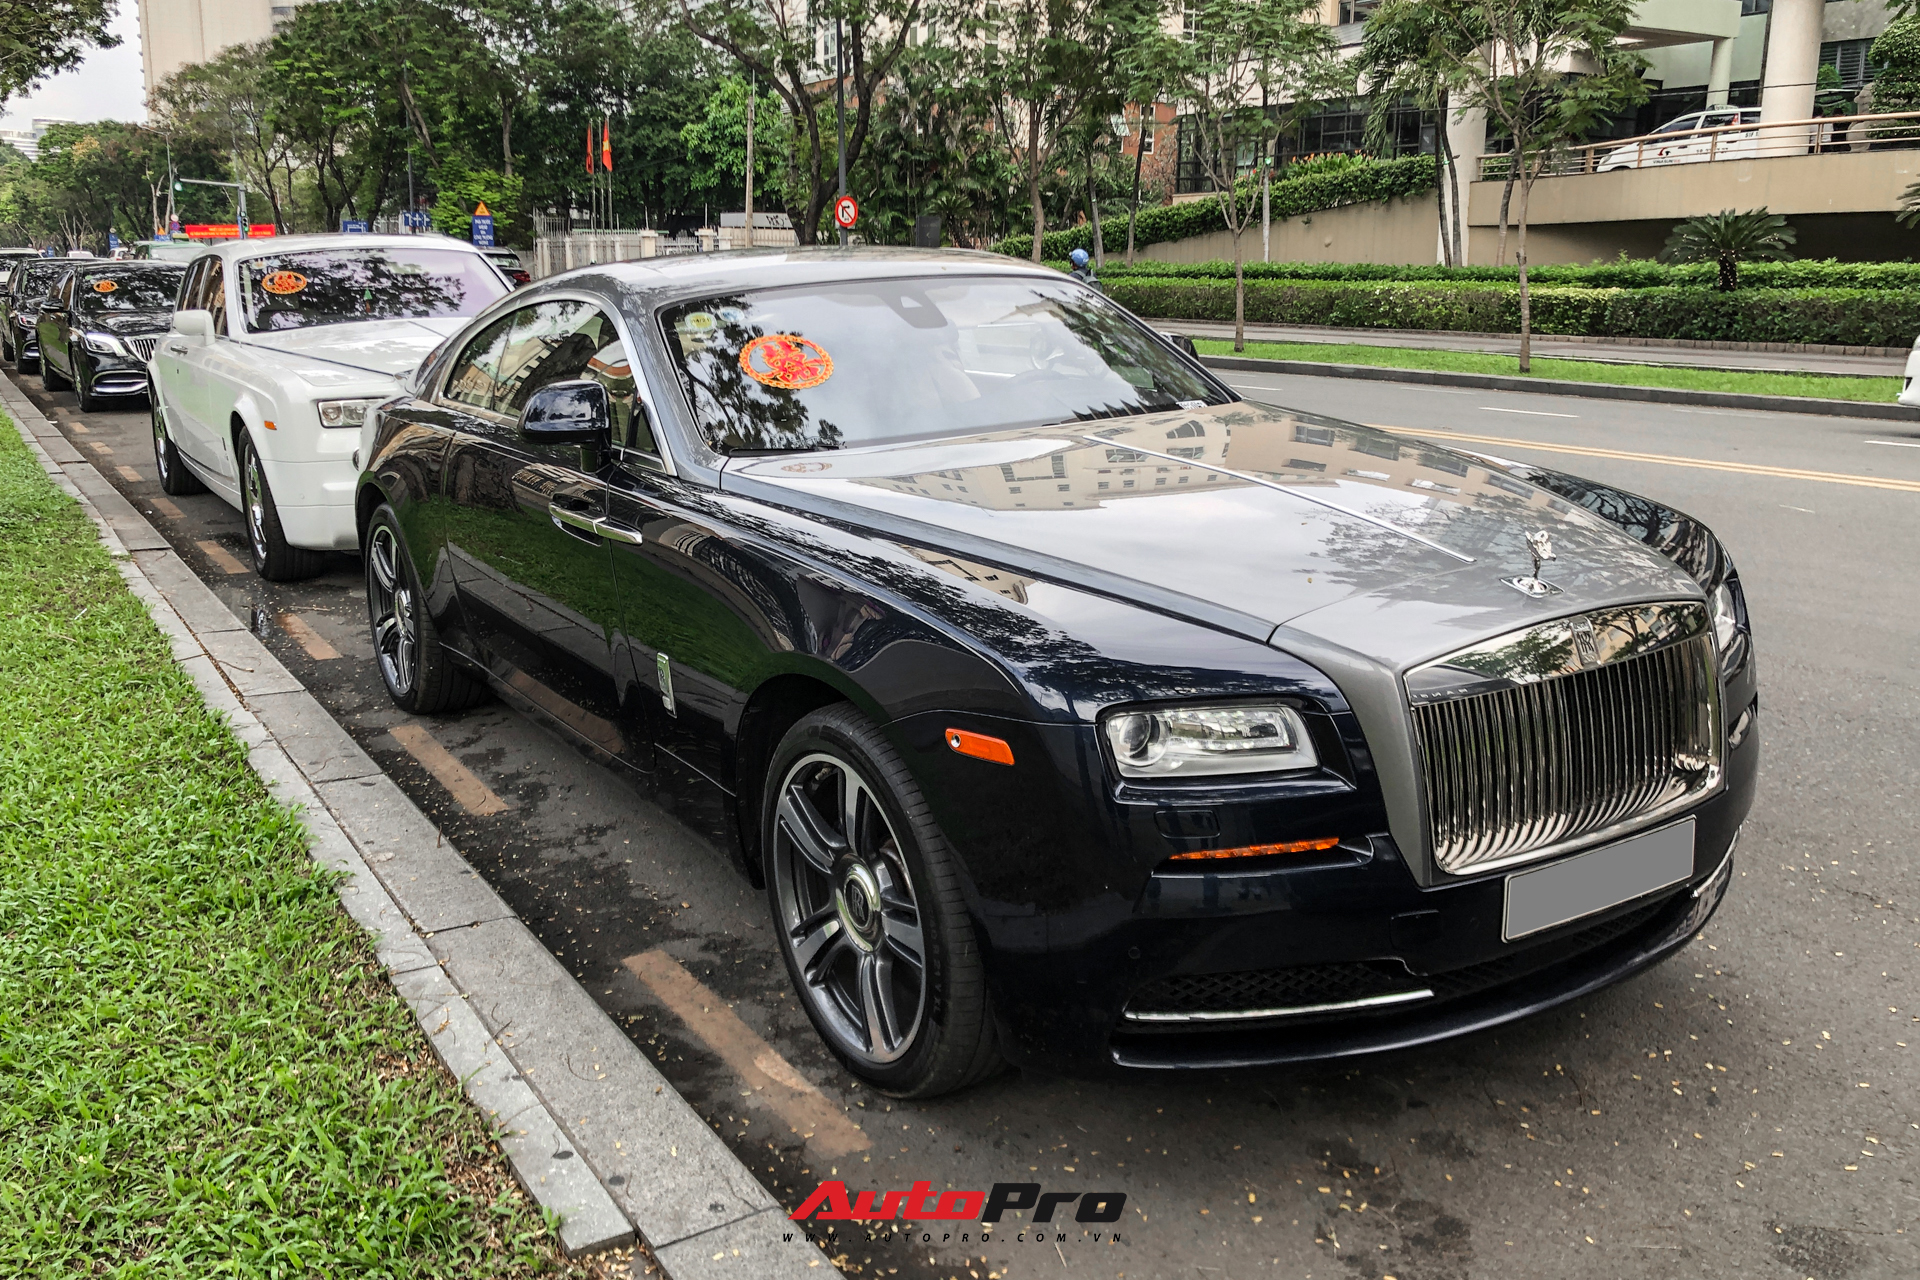 HOT: Loạt xe khủng đưa dâu trong đám hỏi Phan Thành, chú rể cầm lái Rolls-Royce Wraith 34 tỷ đồng - Ảnh 1.